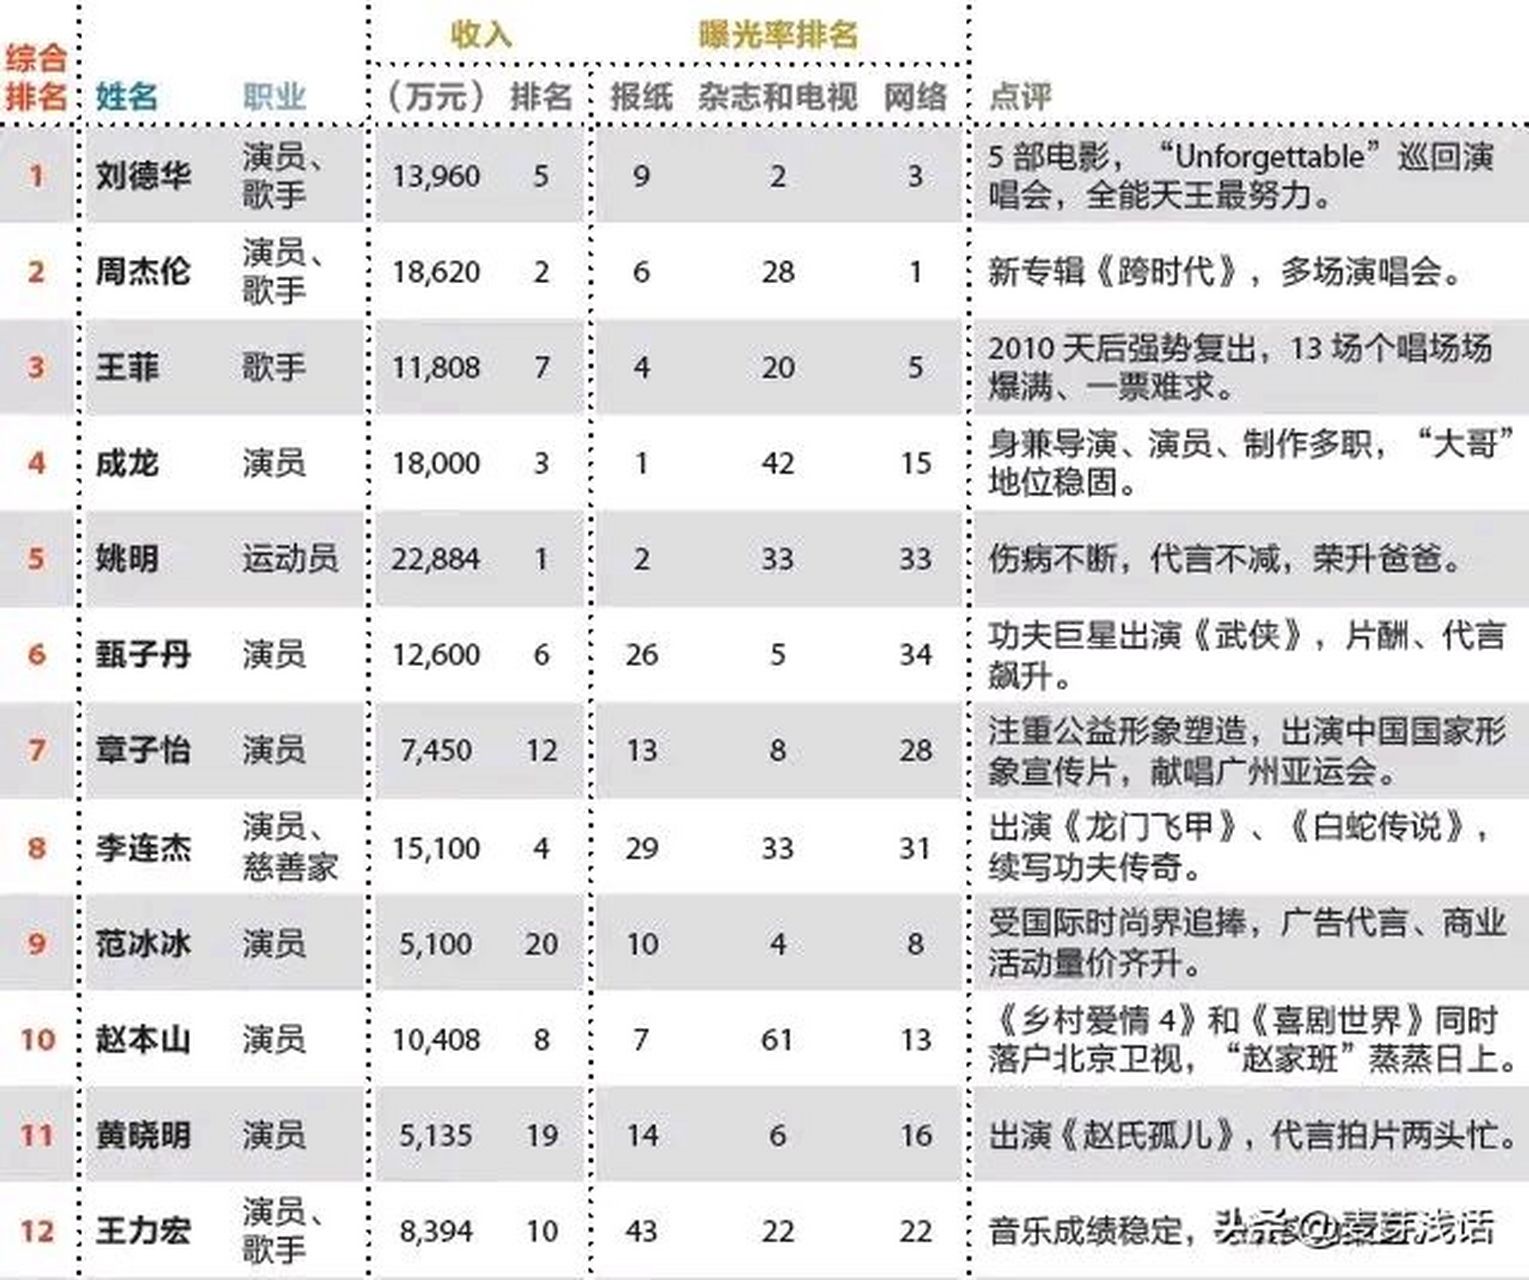 2011年福布斯中国名人榜单一览